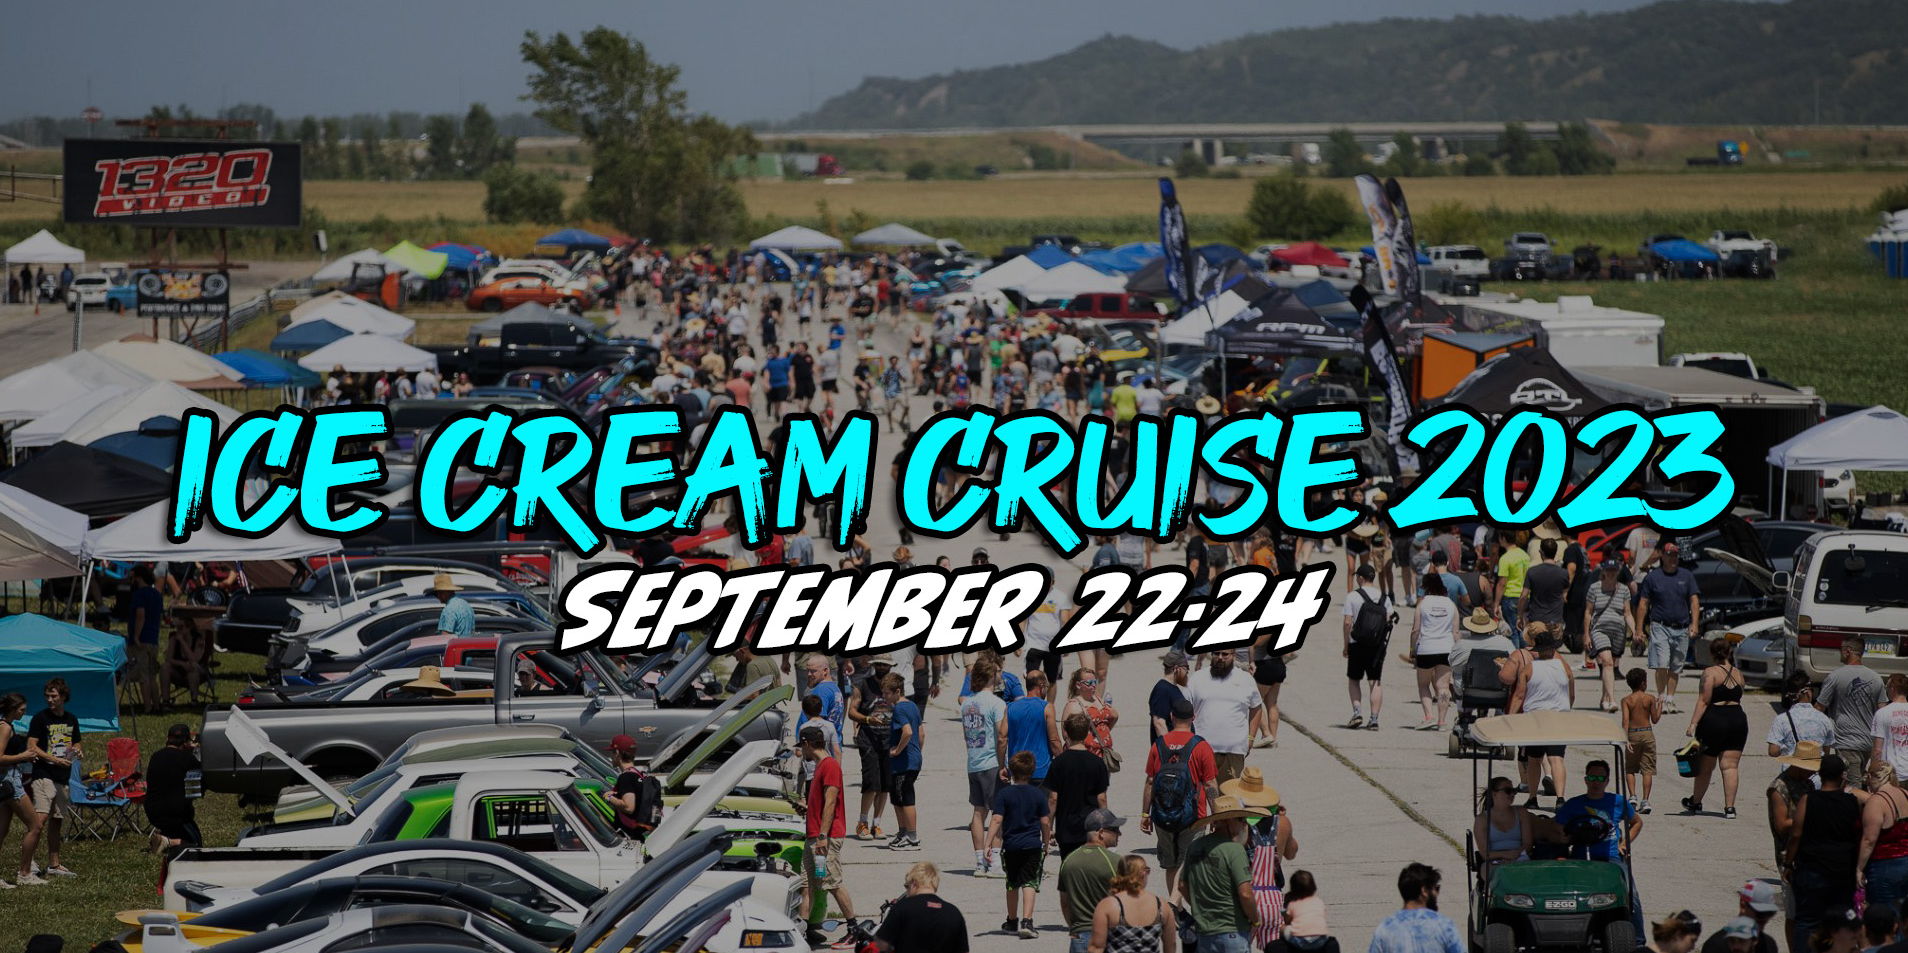 Ice Cream Cruise 2023 promotional image